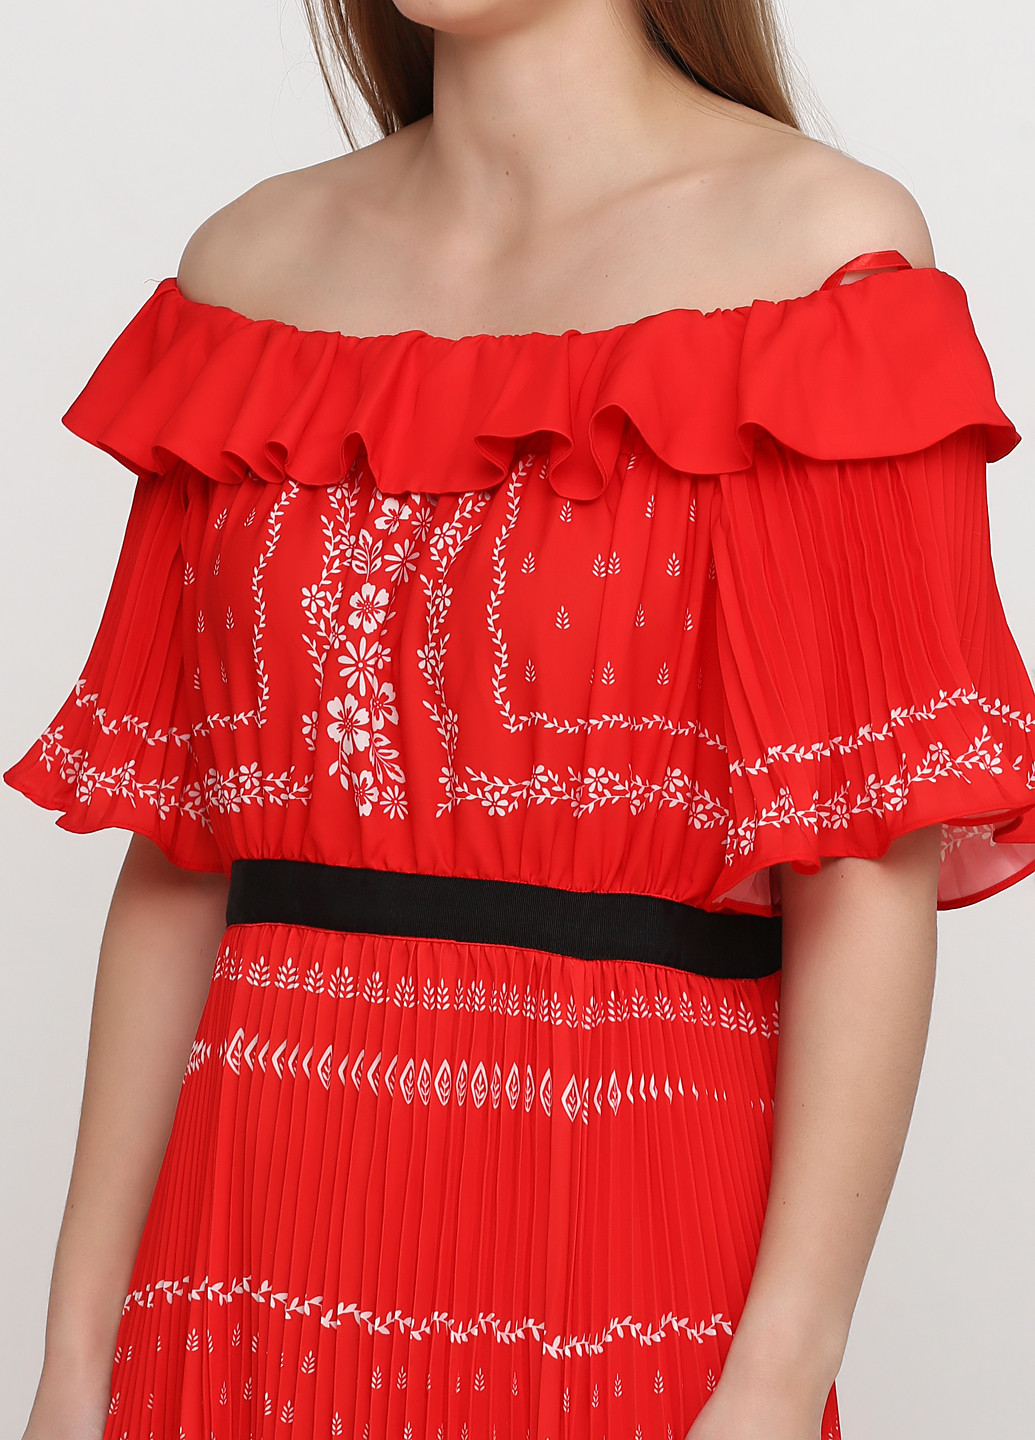 Красное вечернее платье плиссированное, с открытыми плечами Myleene Klass с орнаментом